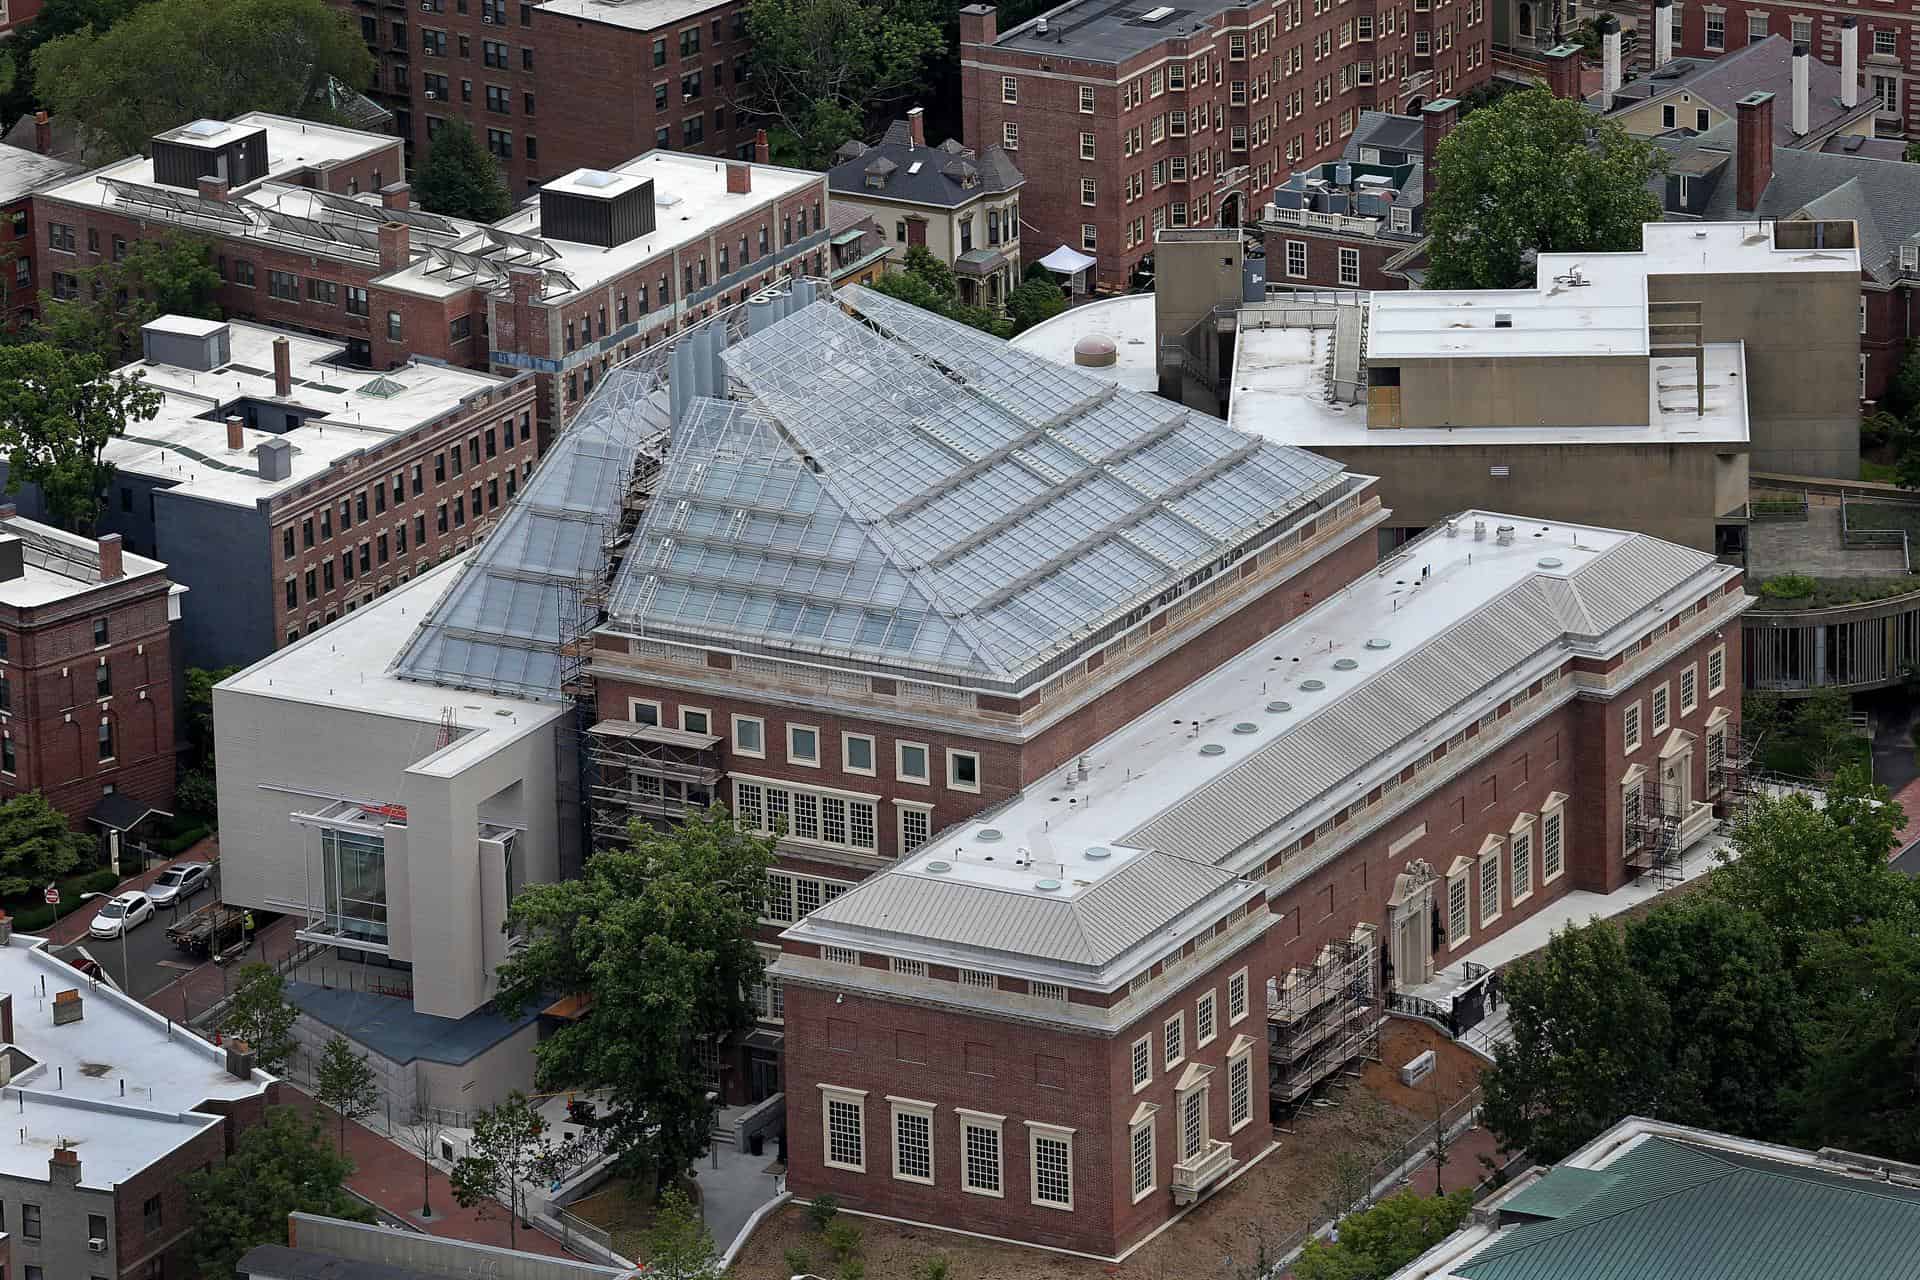 The Harvard Art Museums